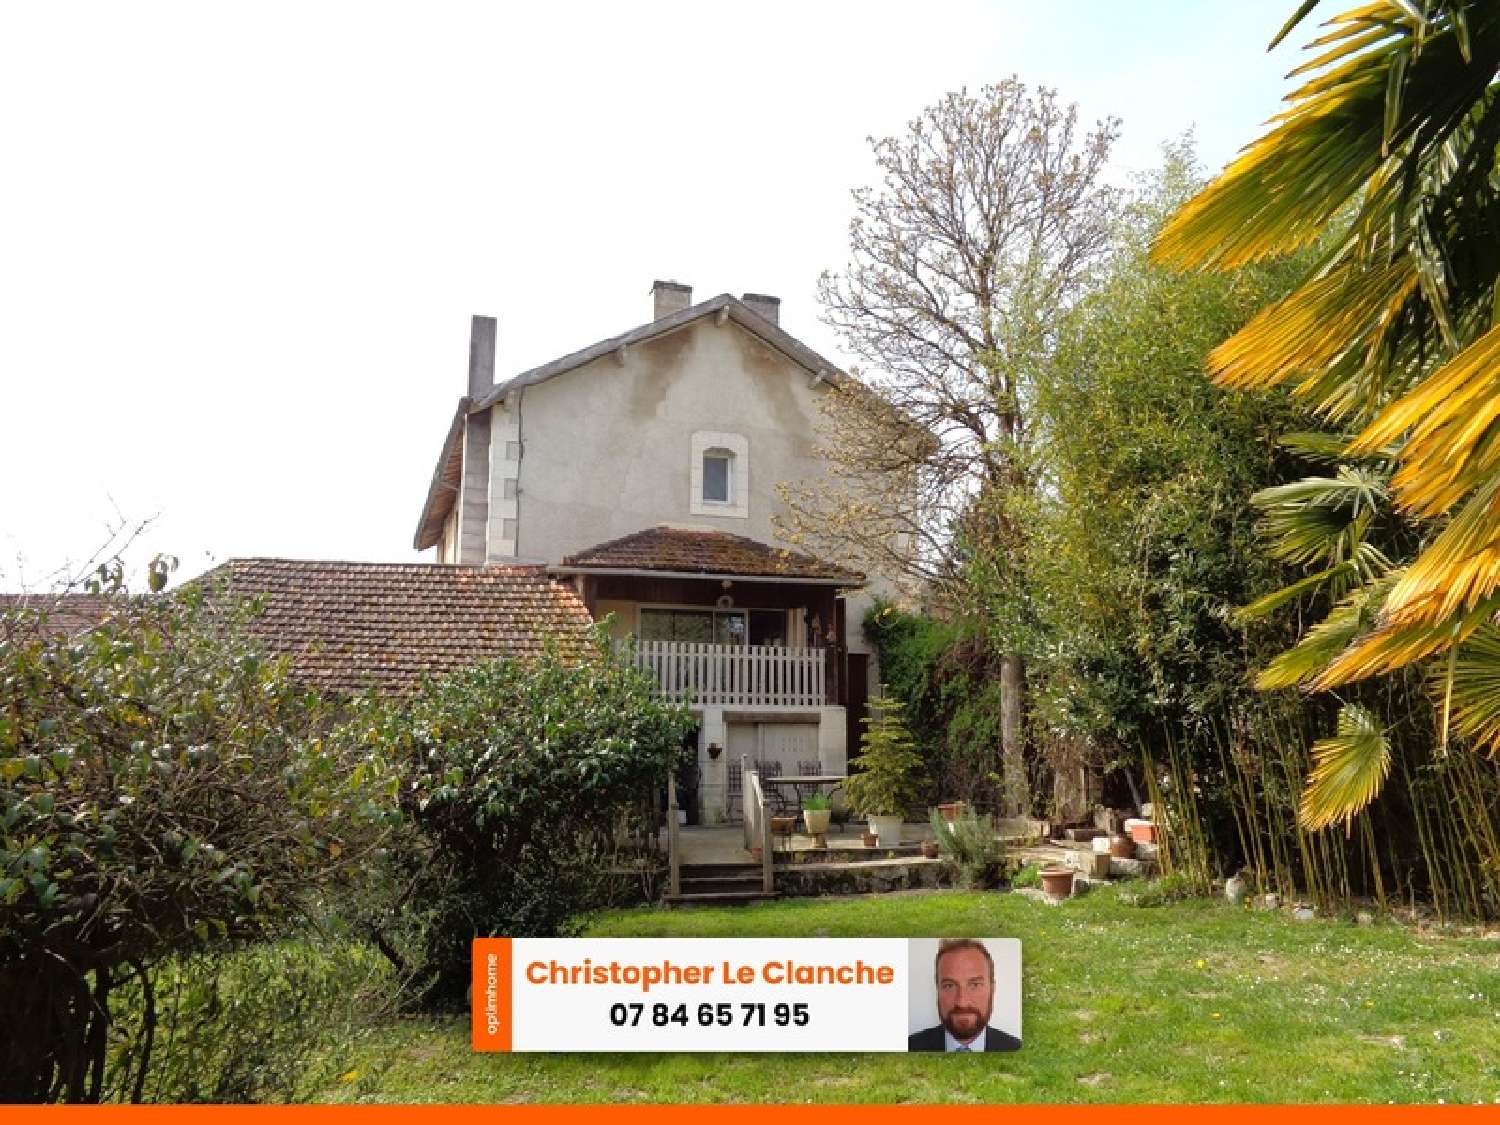  for sale village house Celles Dordogne 1